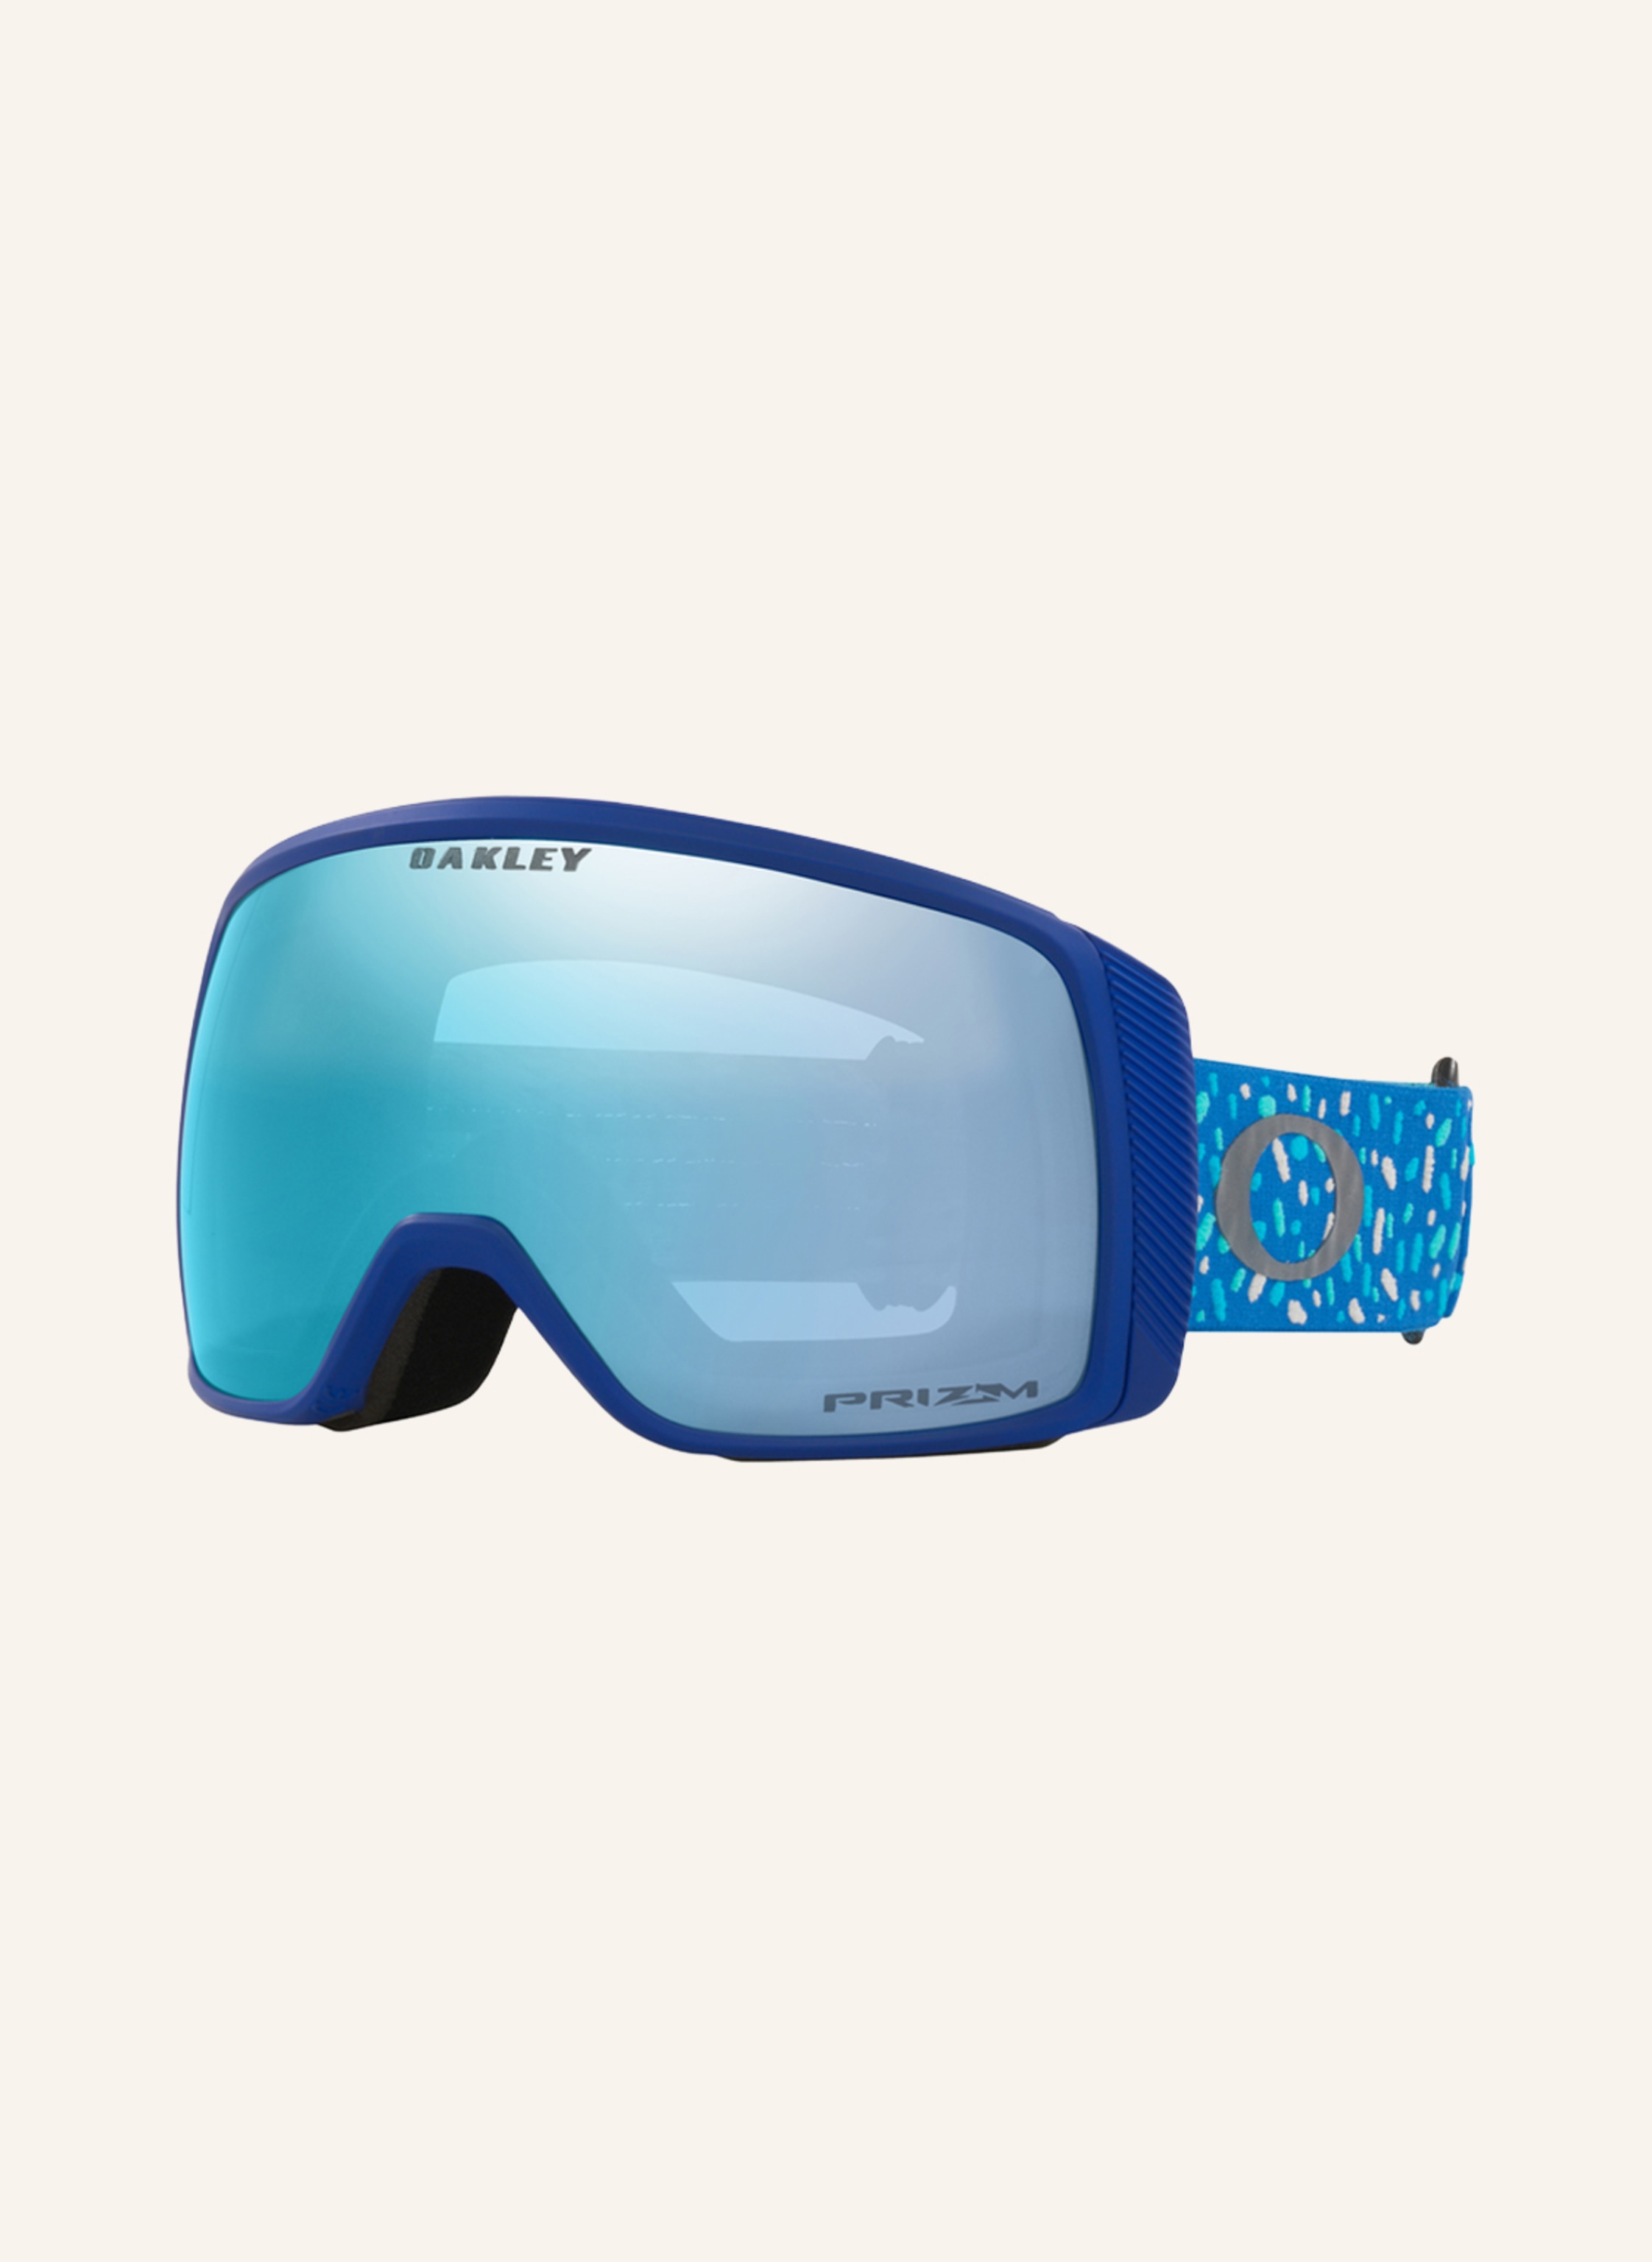 OAKLEY Ski goggles FLIGHT TRACKER in blue | Breuninger